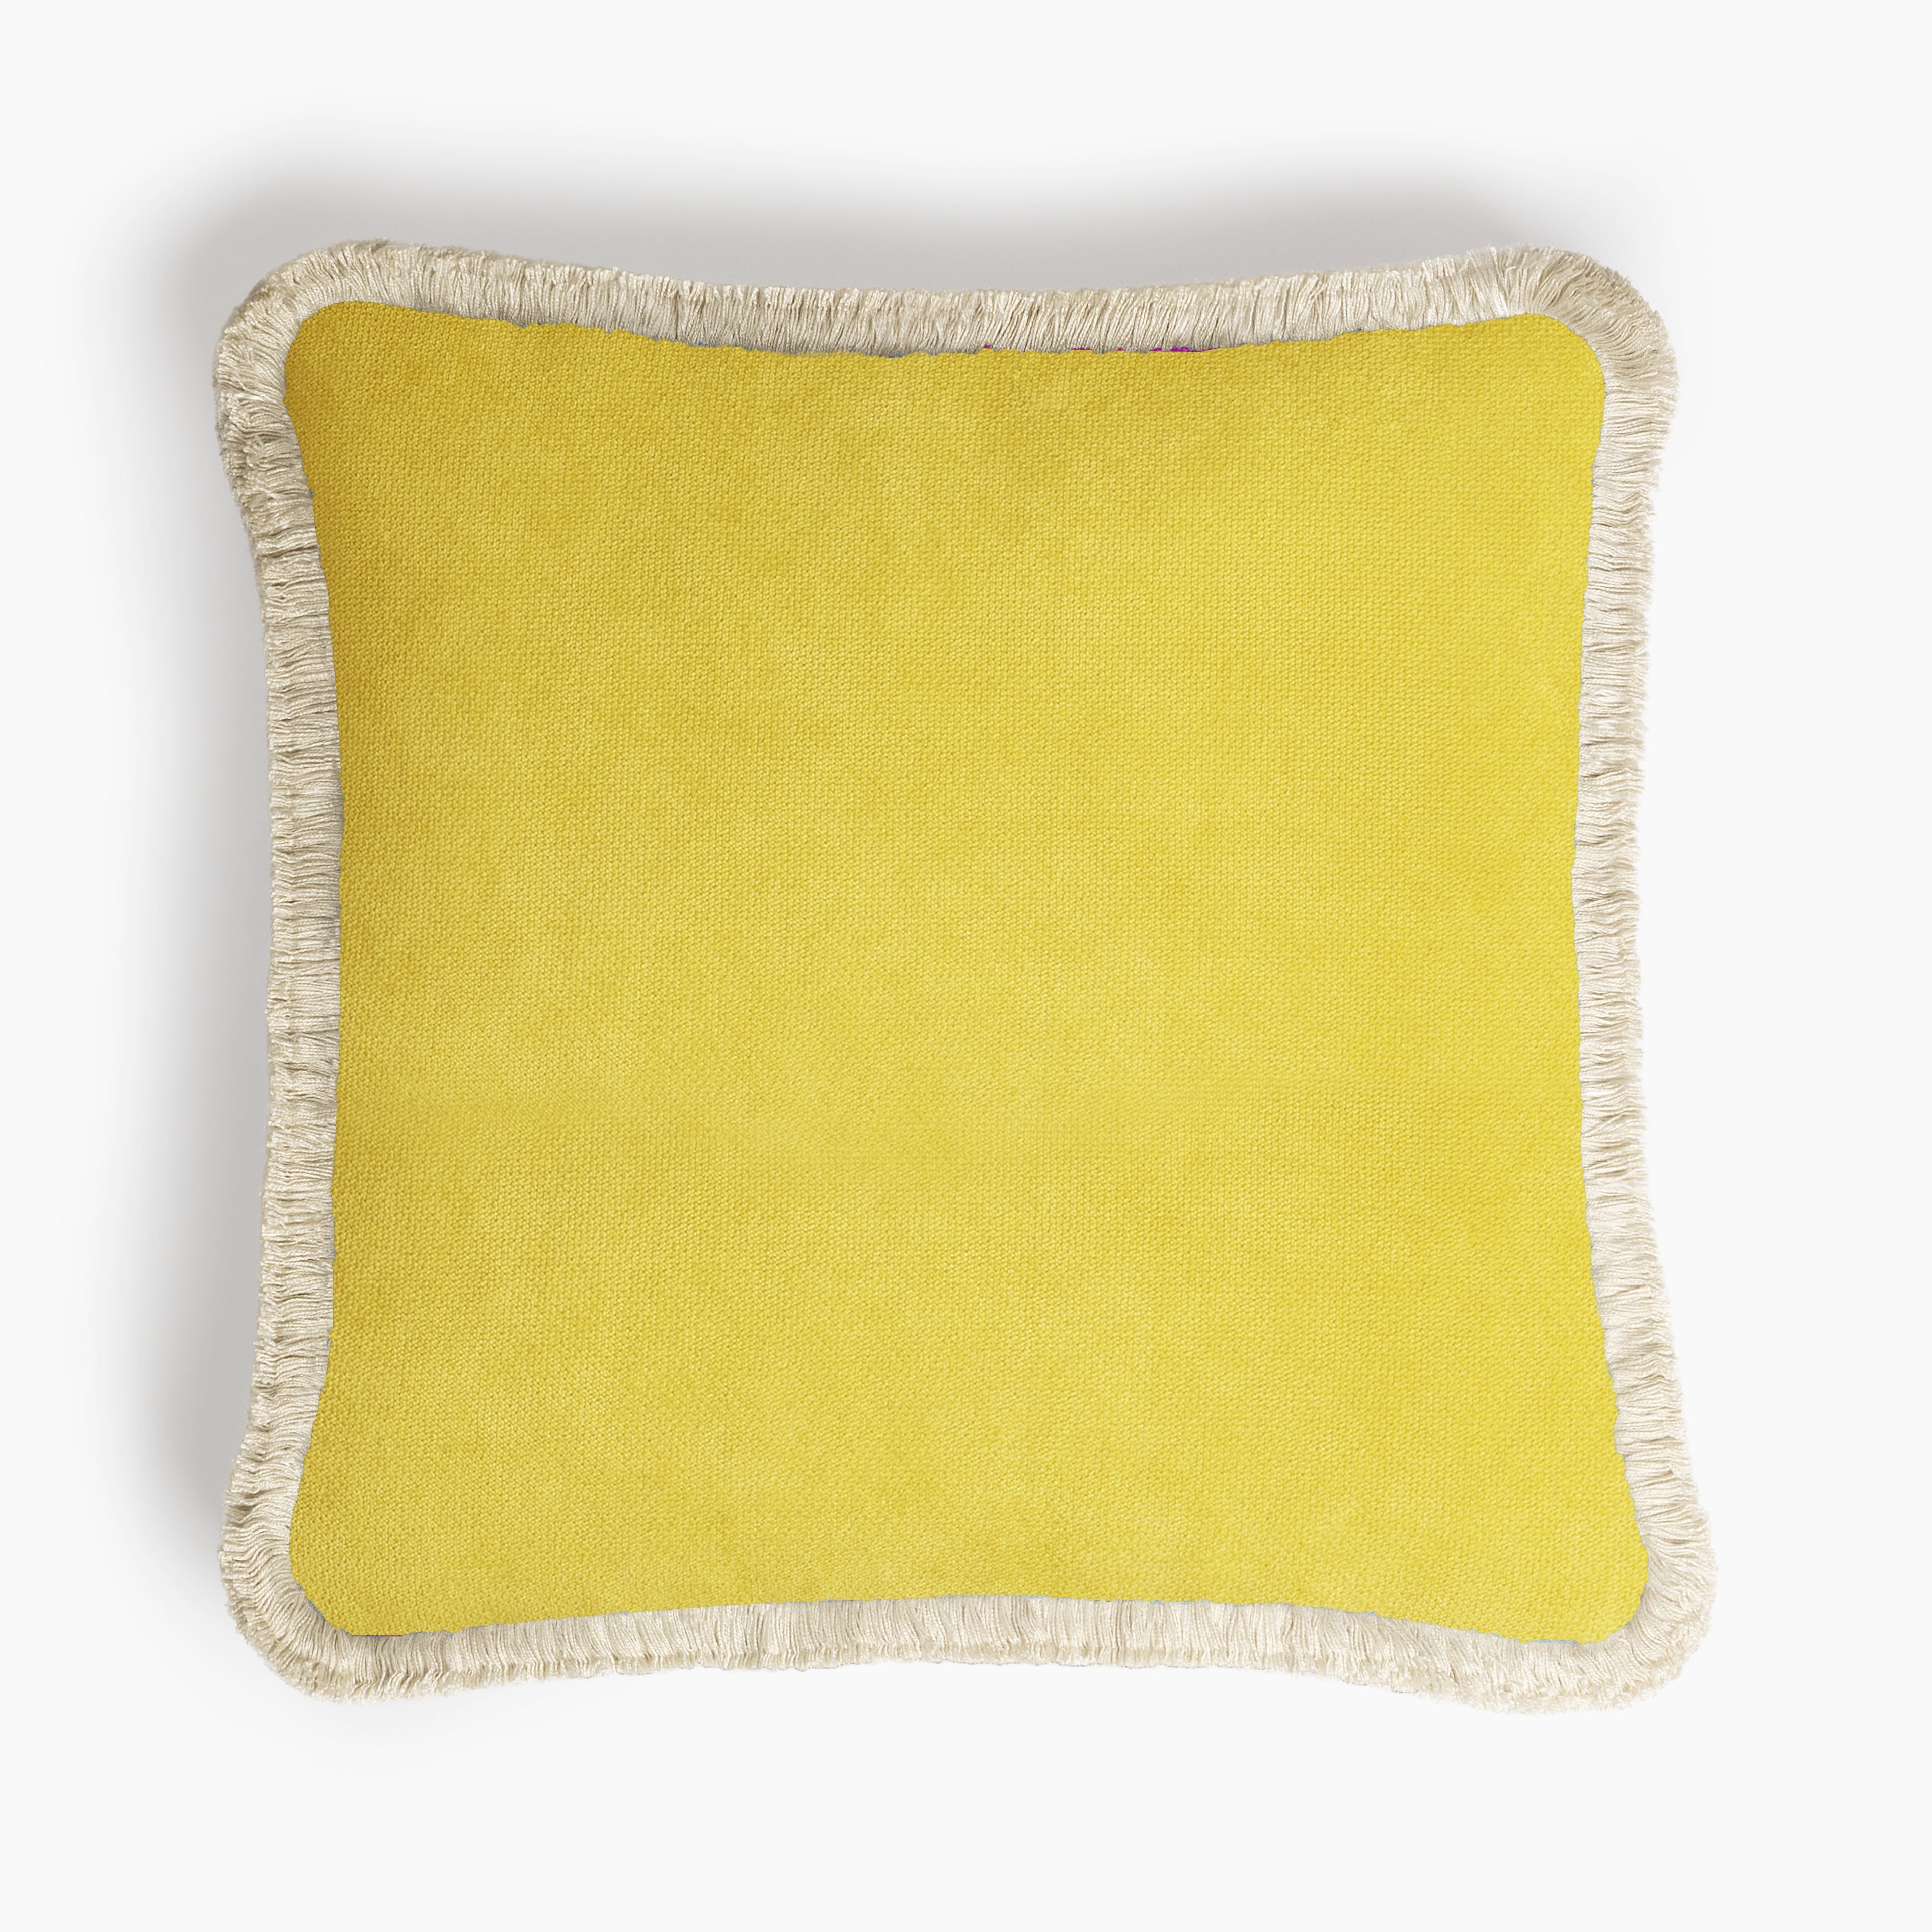 Lo Decor Velvet Yellow Pillow with Cream Fringes